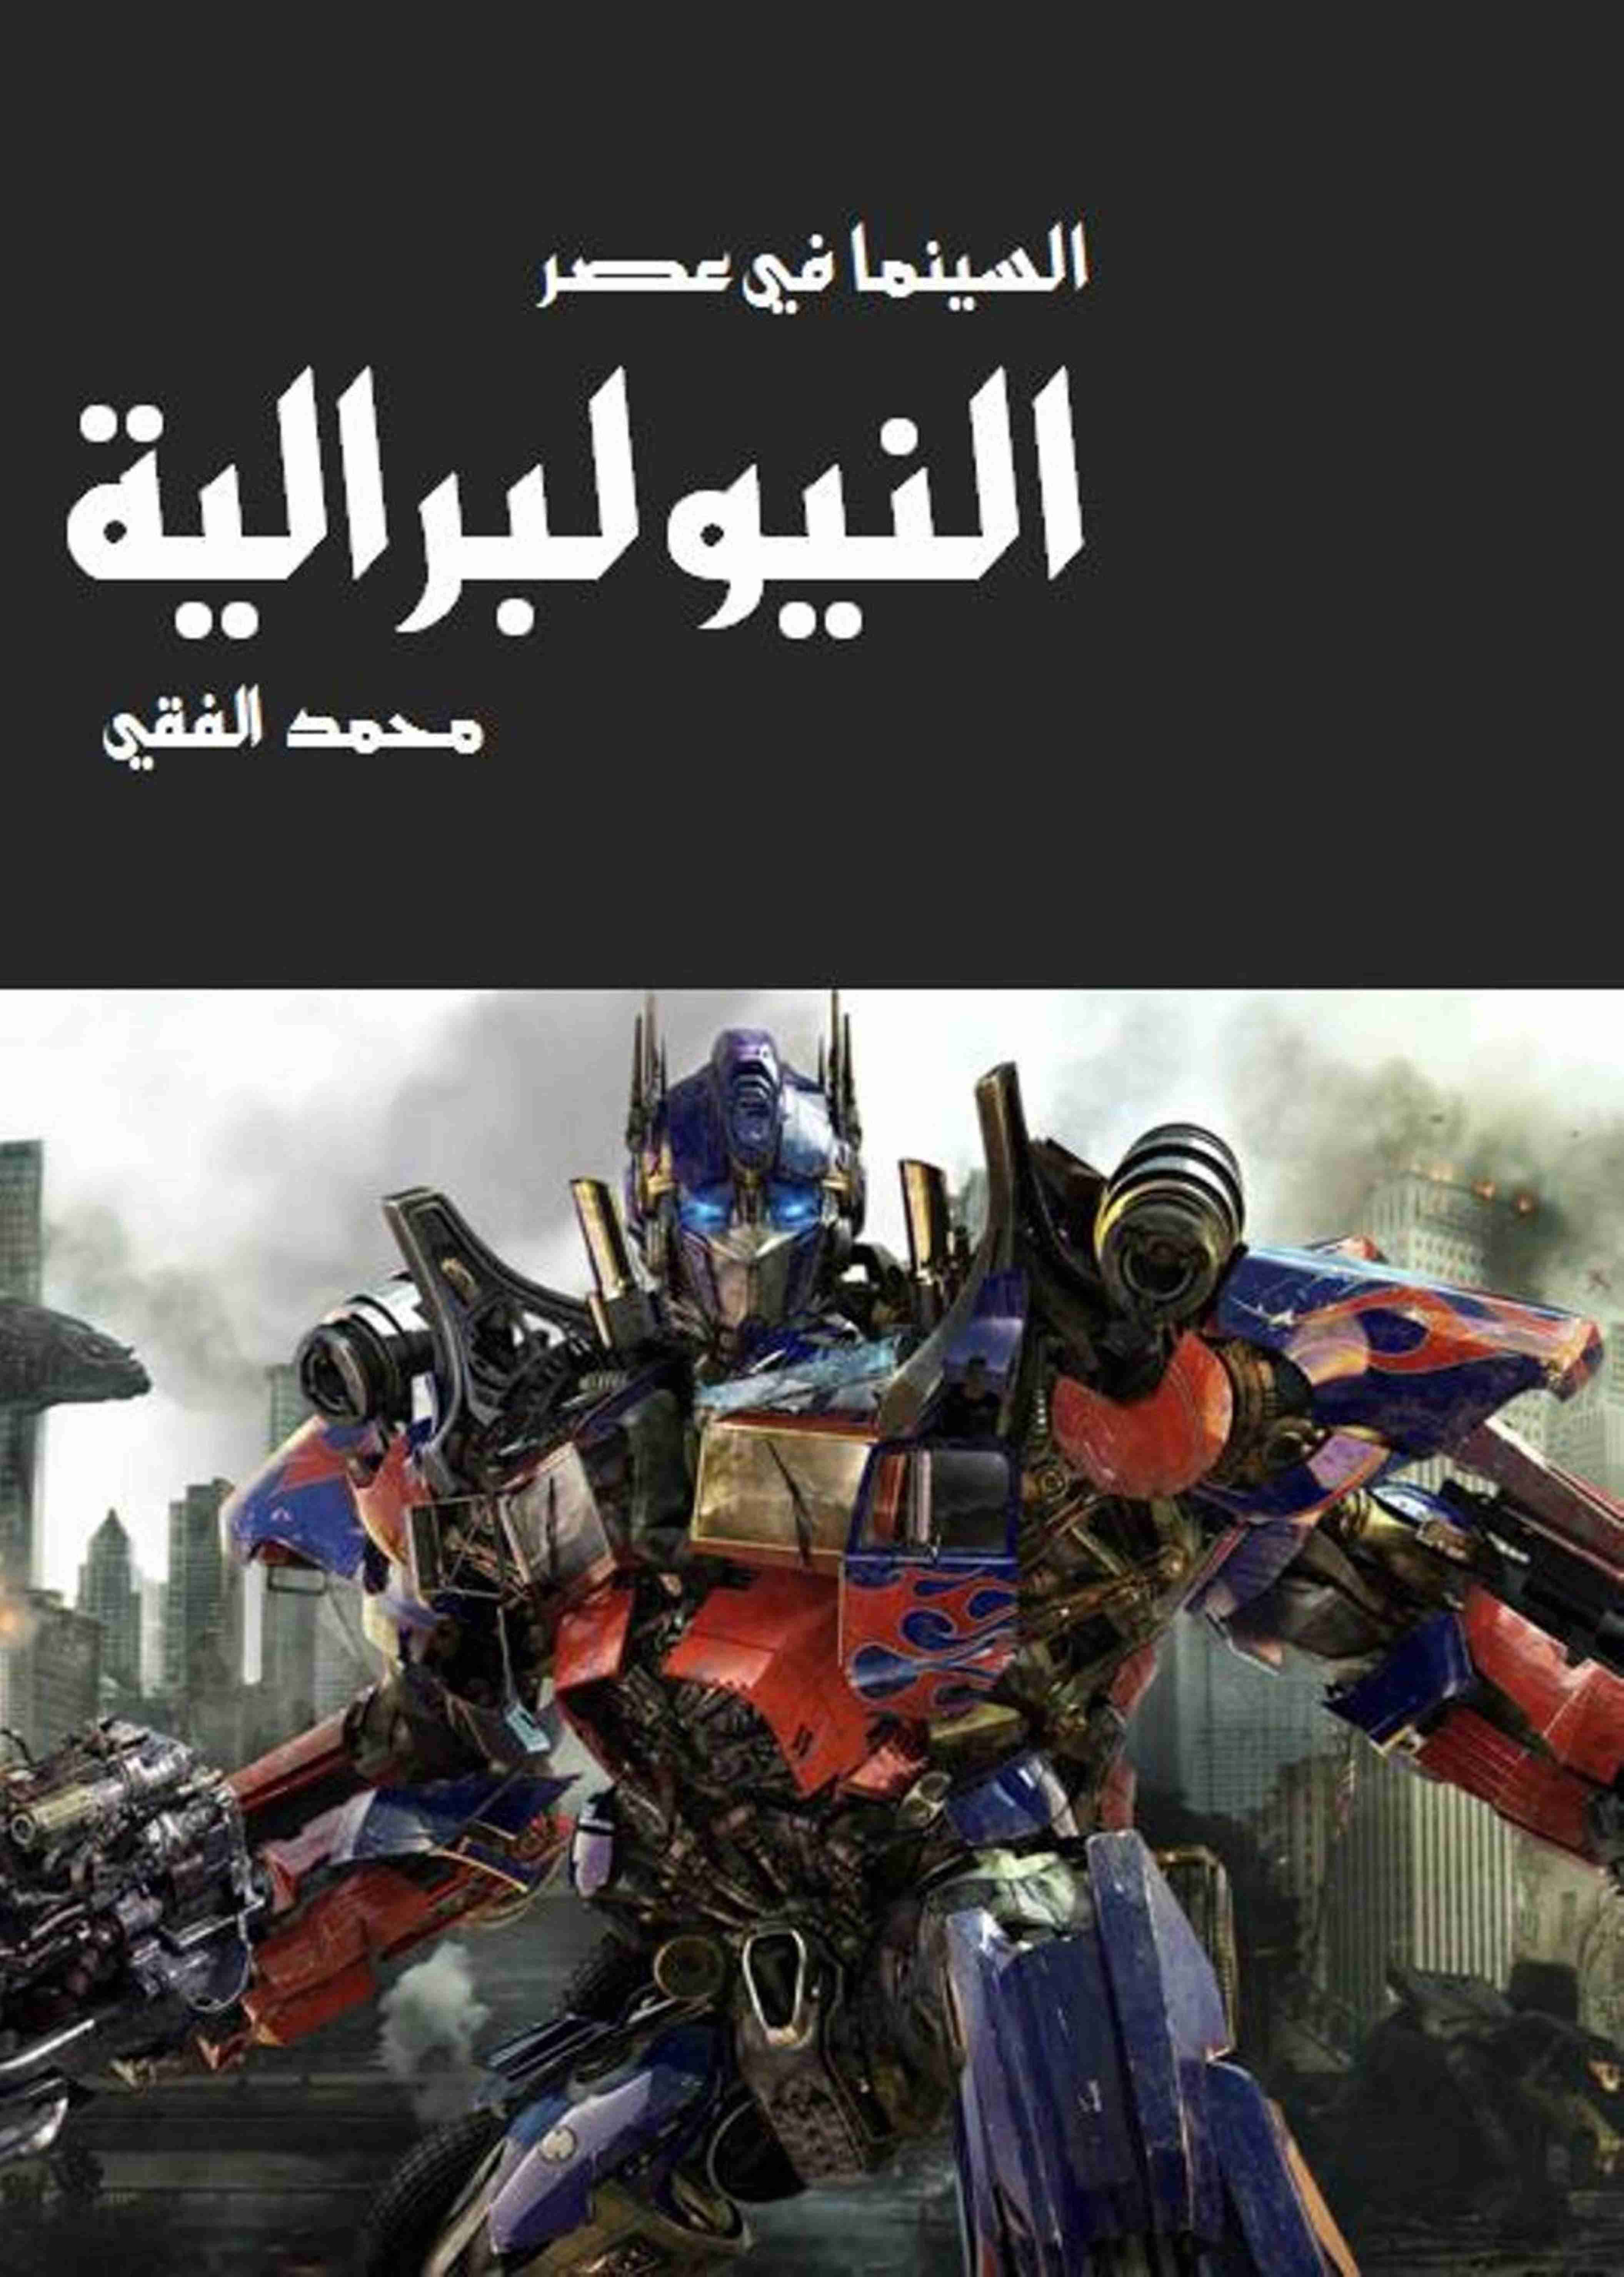 كتاب السينما في عصر النيوليبرالية لـ محمد الفقي